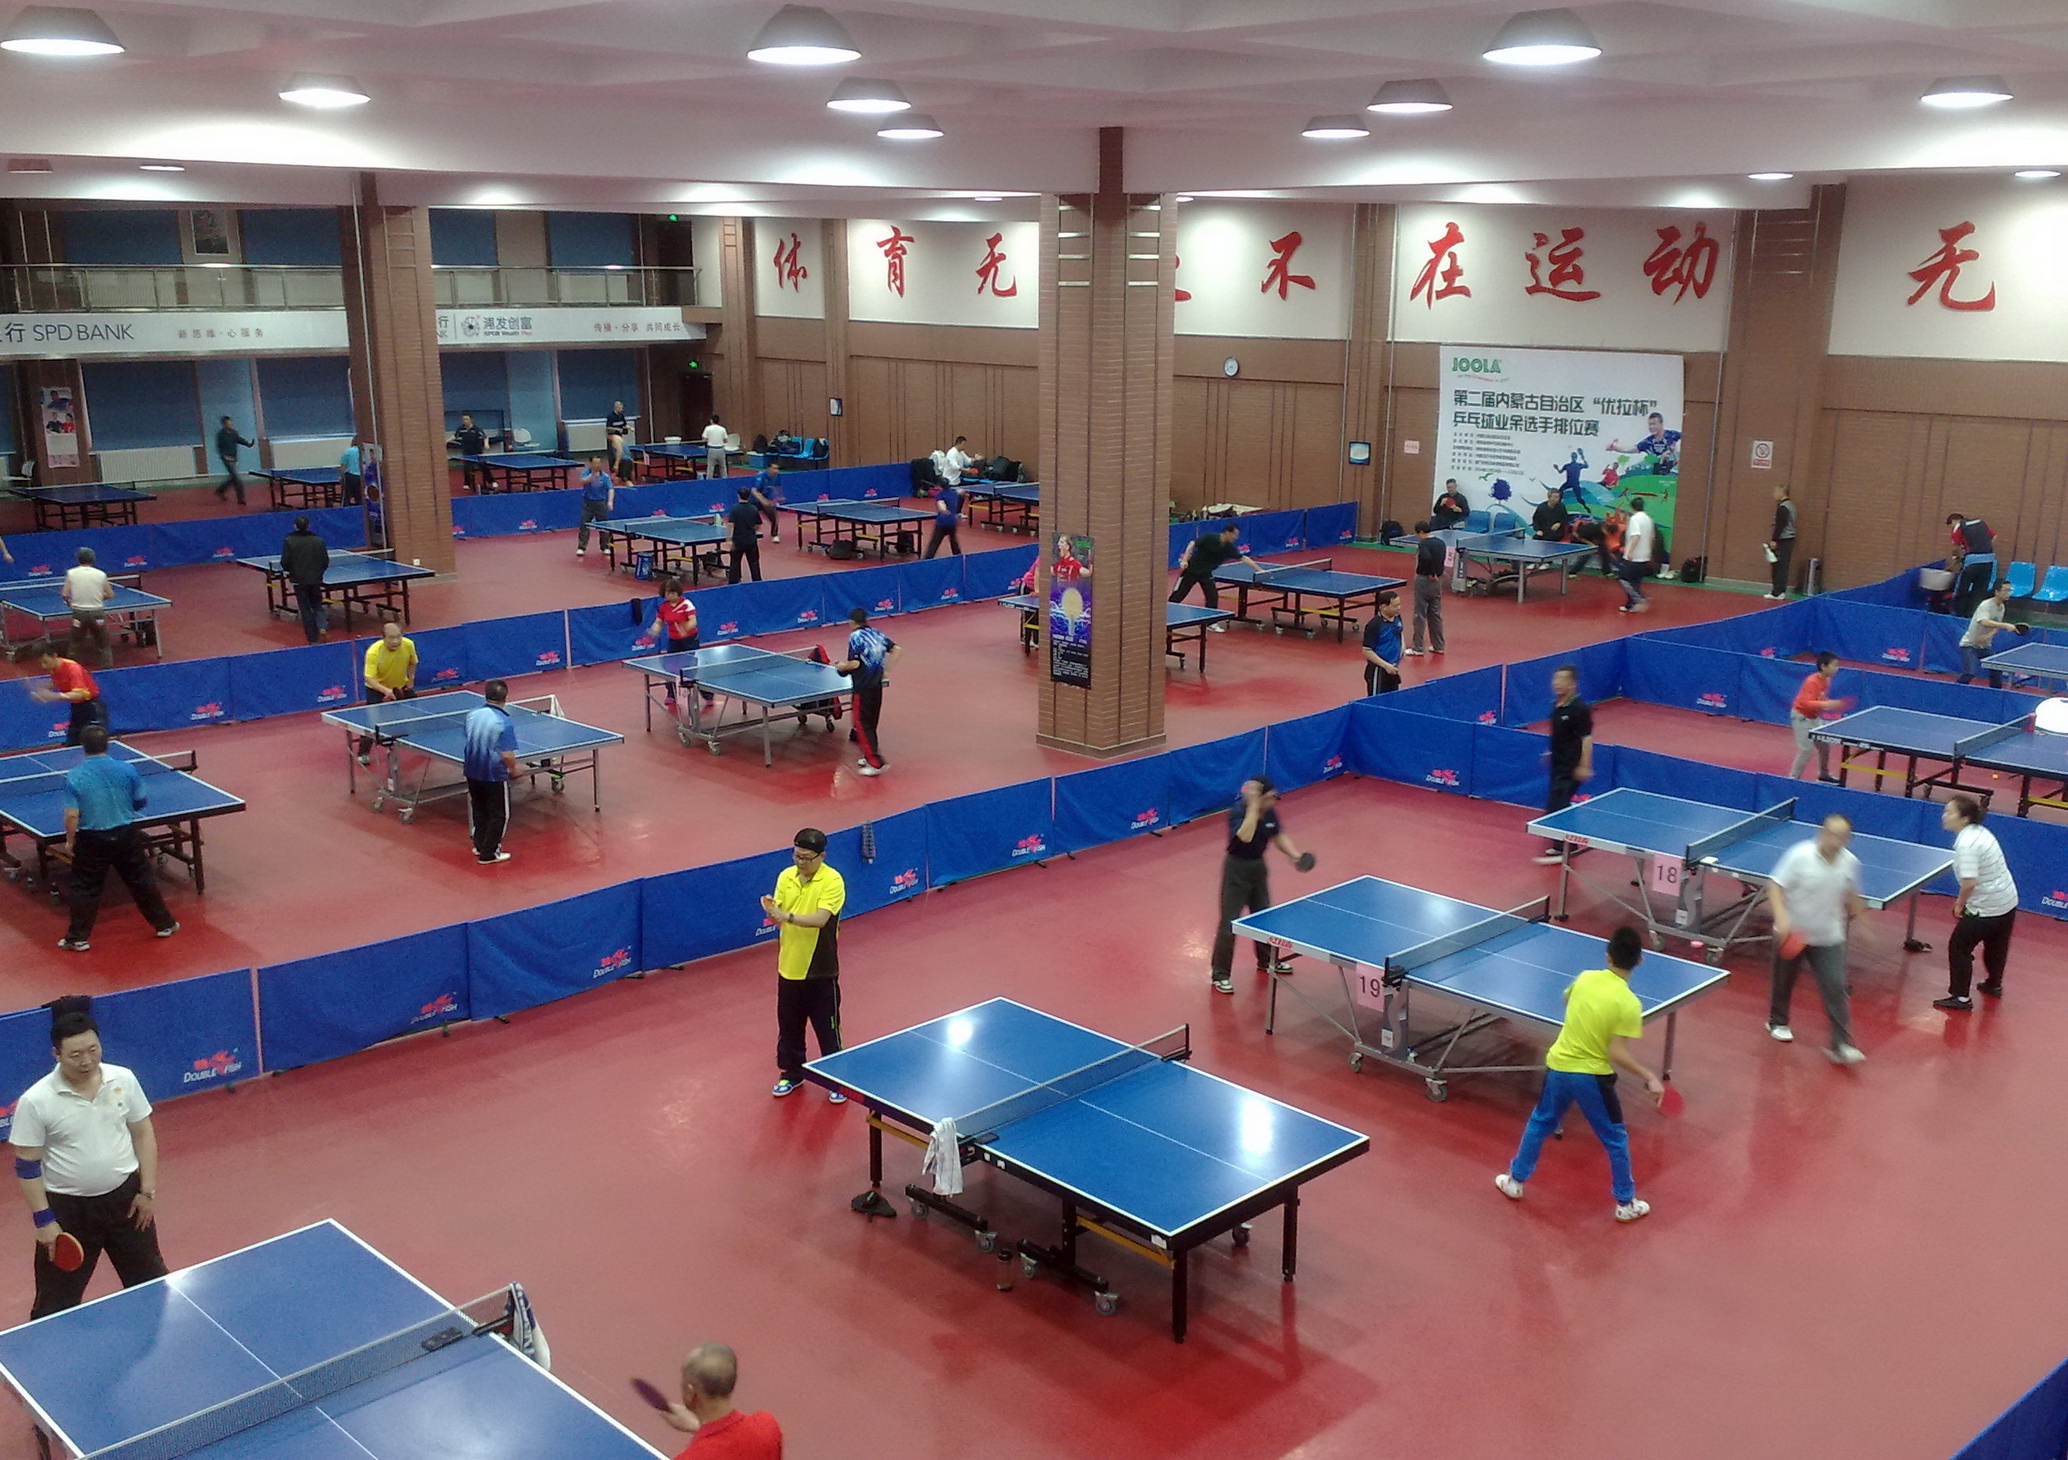 石家庄社区学院乒乓球学院乒乓球规则培训班